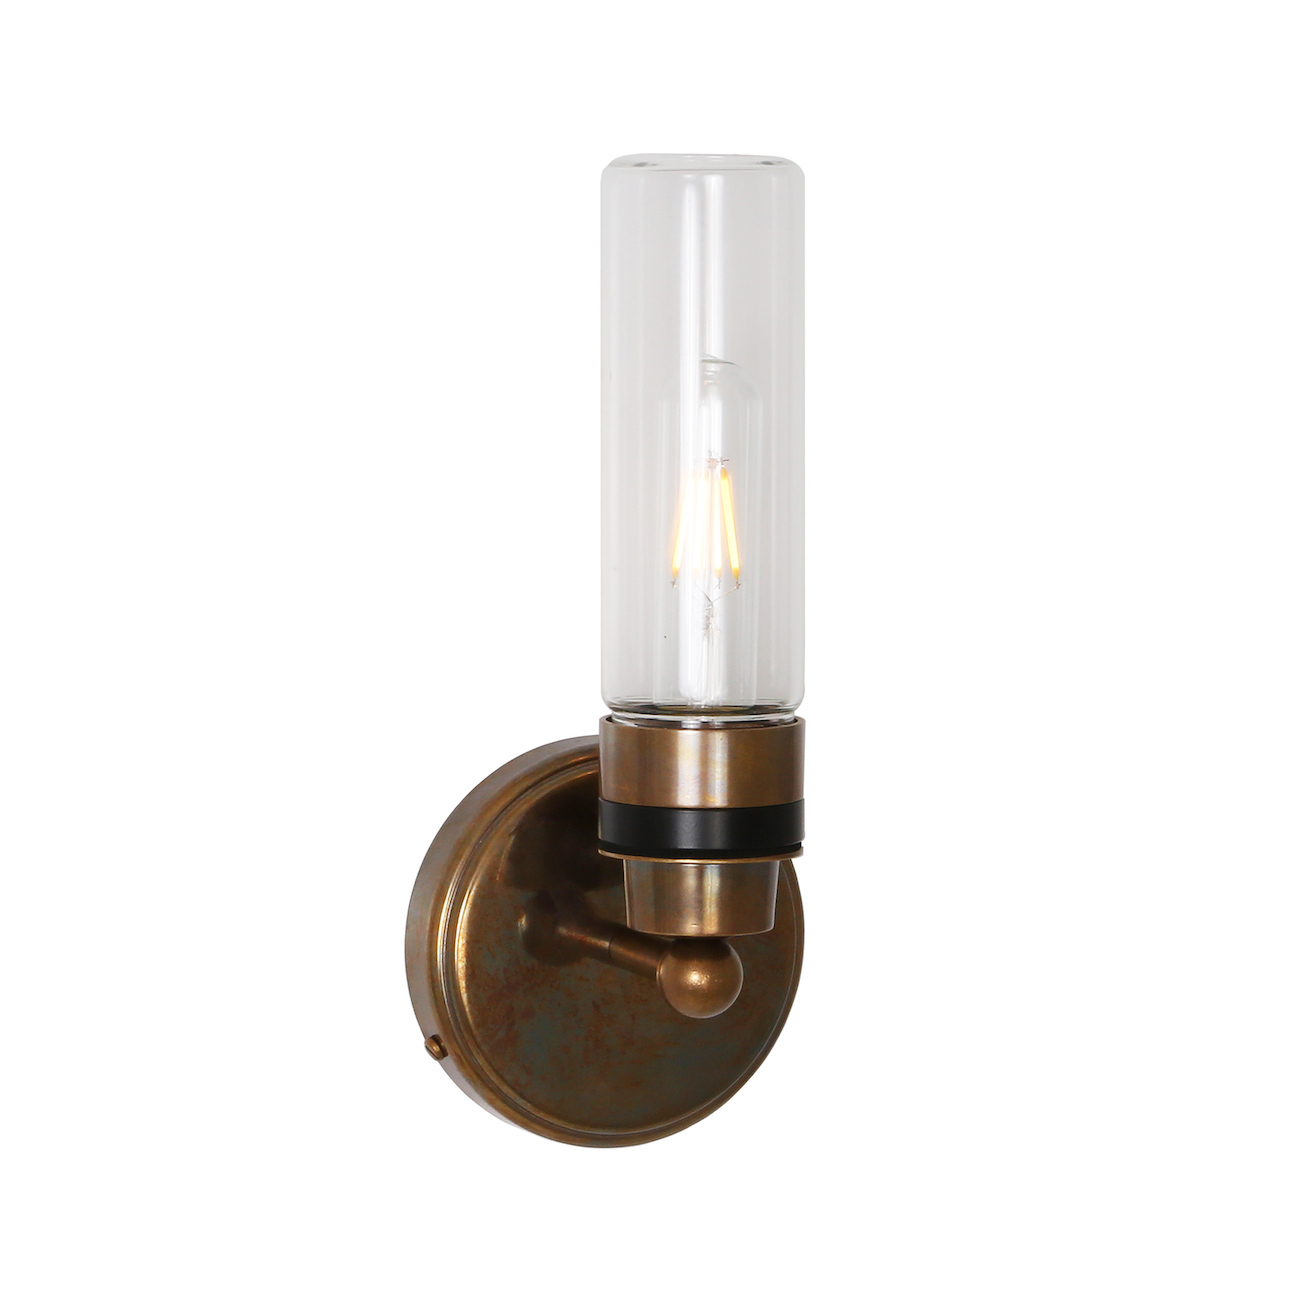 Badezimmer-Wandlampe mit klarem oder prismatischem Glaszylinder, IP65: Alt-Messing patiniert, klares Glas